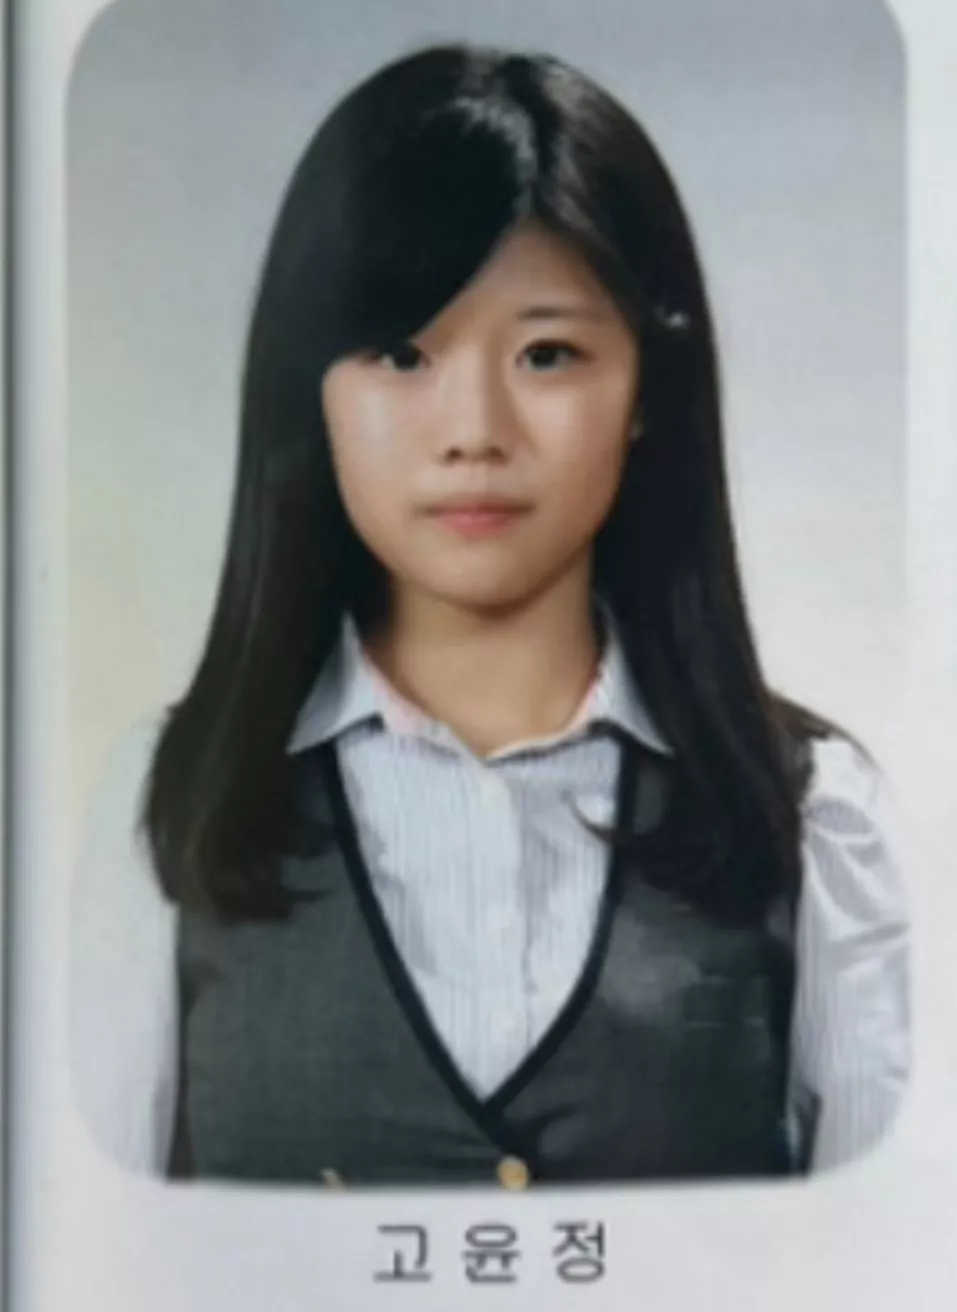 Посмотрите, как самые популярные корейские актрисы изменились со школьных времен